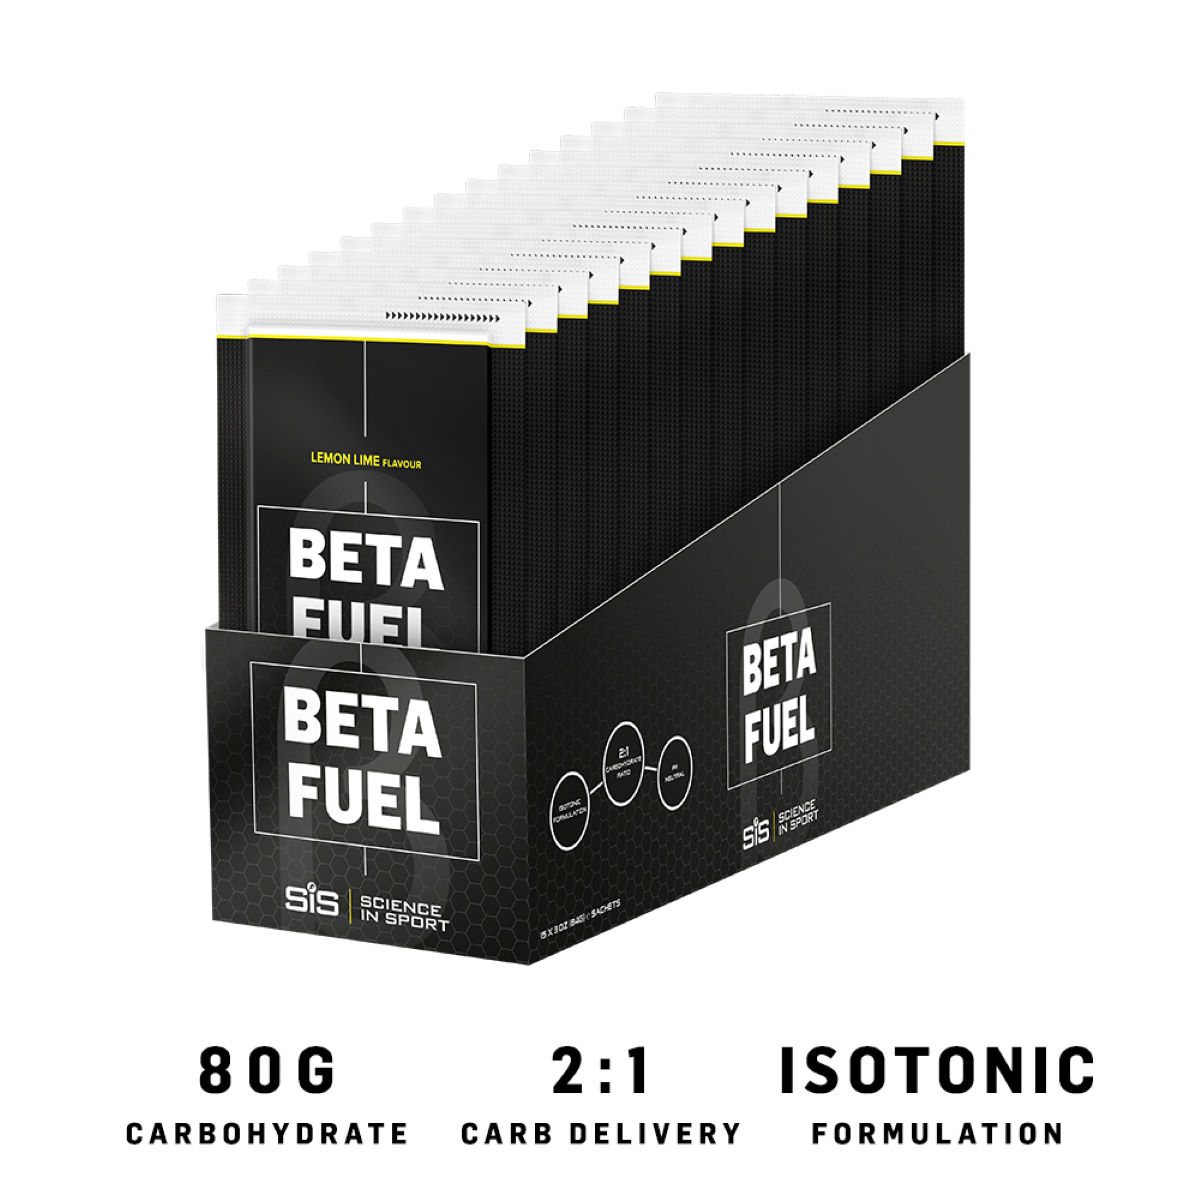 Bebida Science in Sport Beta Fuel (15 x 84g) - Suplementos